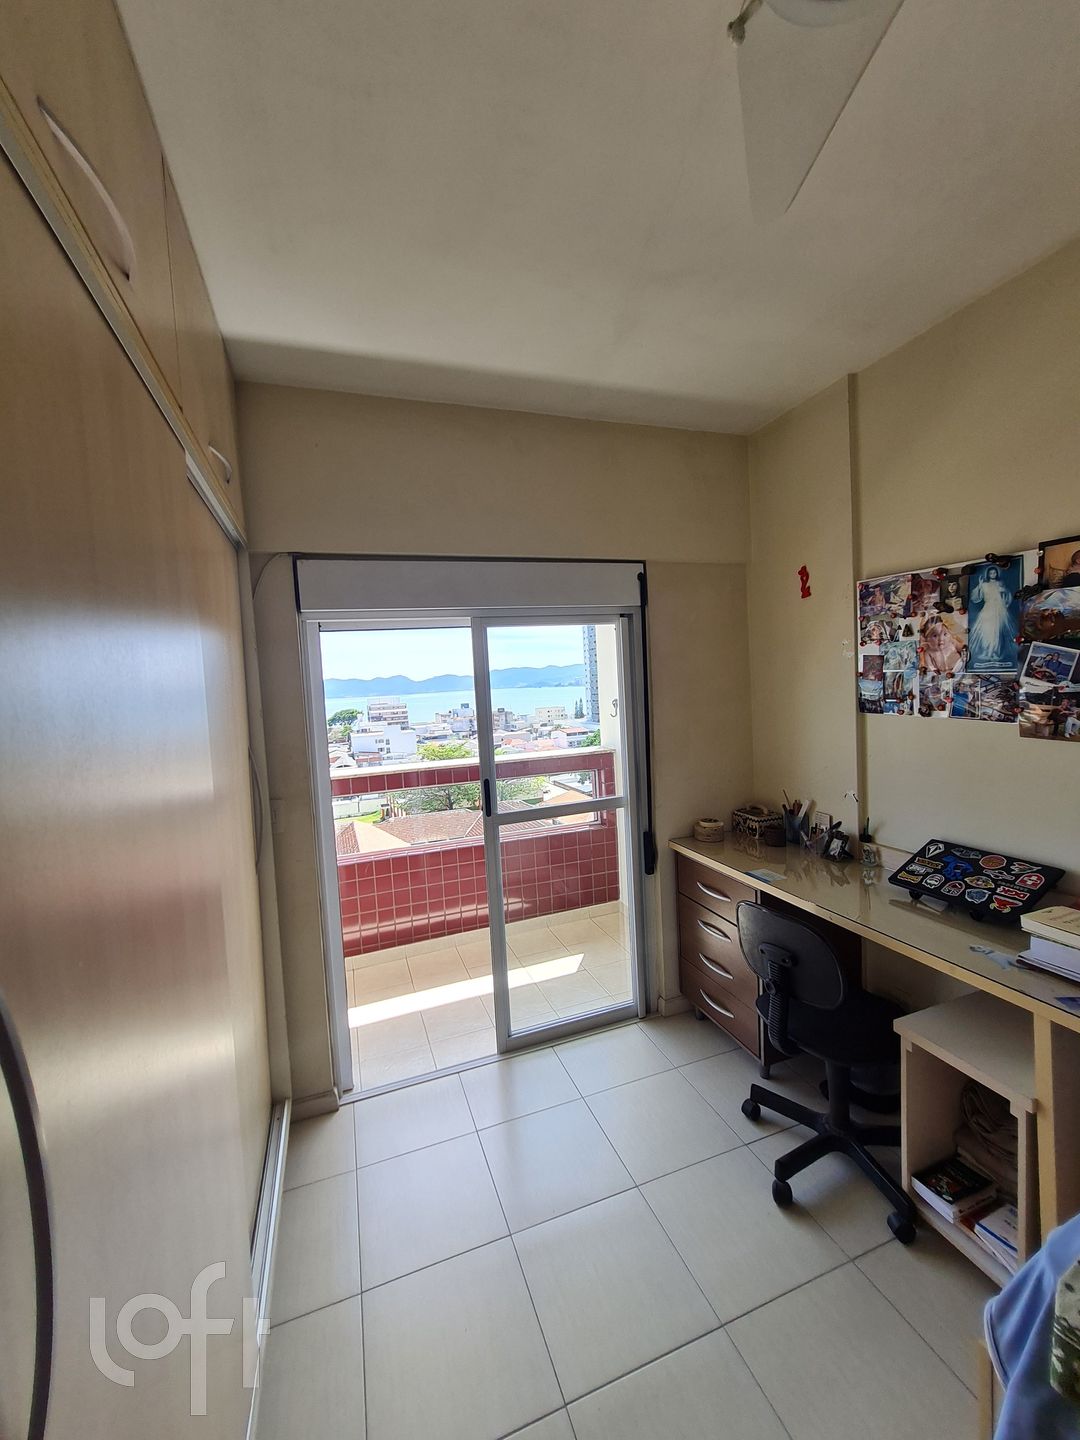 VENDA &#8211; Apartamento de 4 quartos no bairro Estreito, Florianópolis &#8211; PUlnrf1p